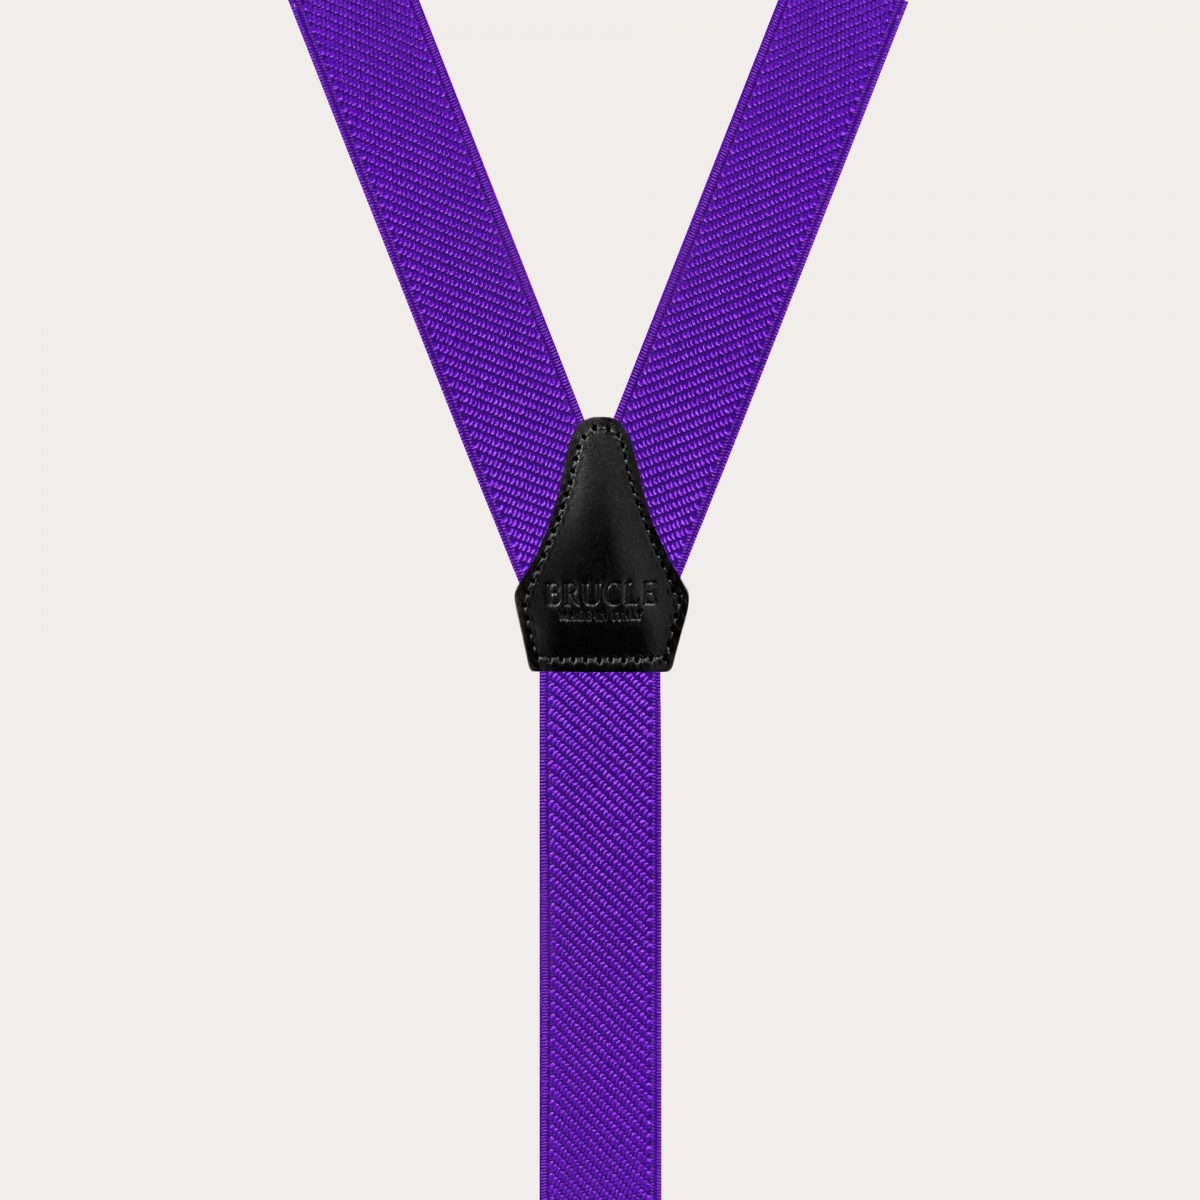 BRUCLE Bretelles fines unisexes en forme de Y à pinces, violet